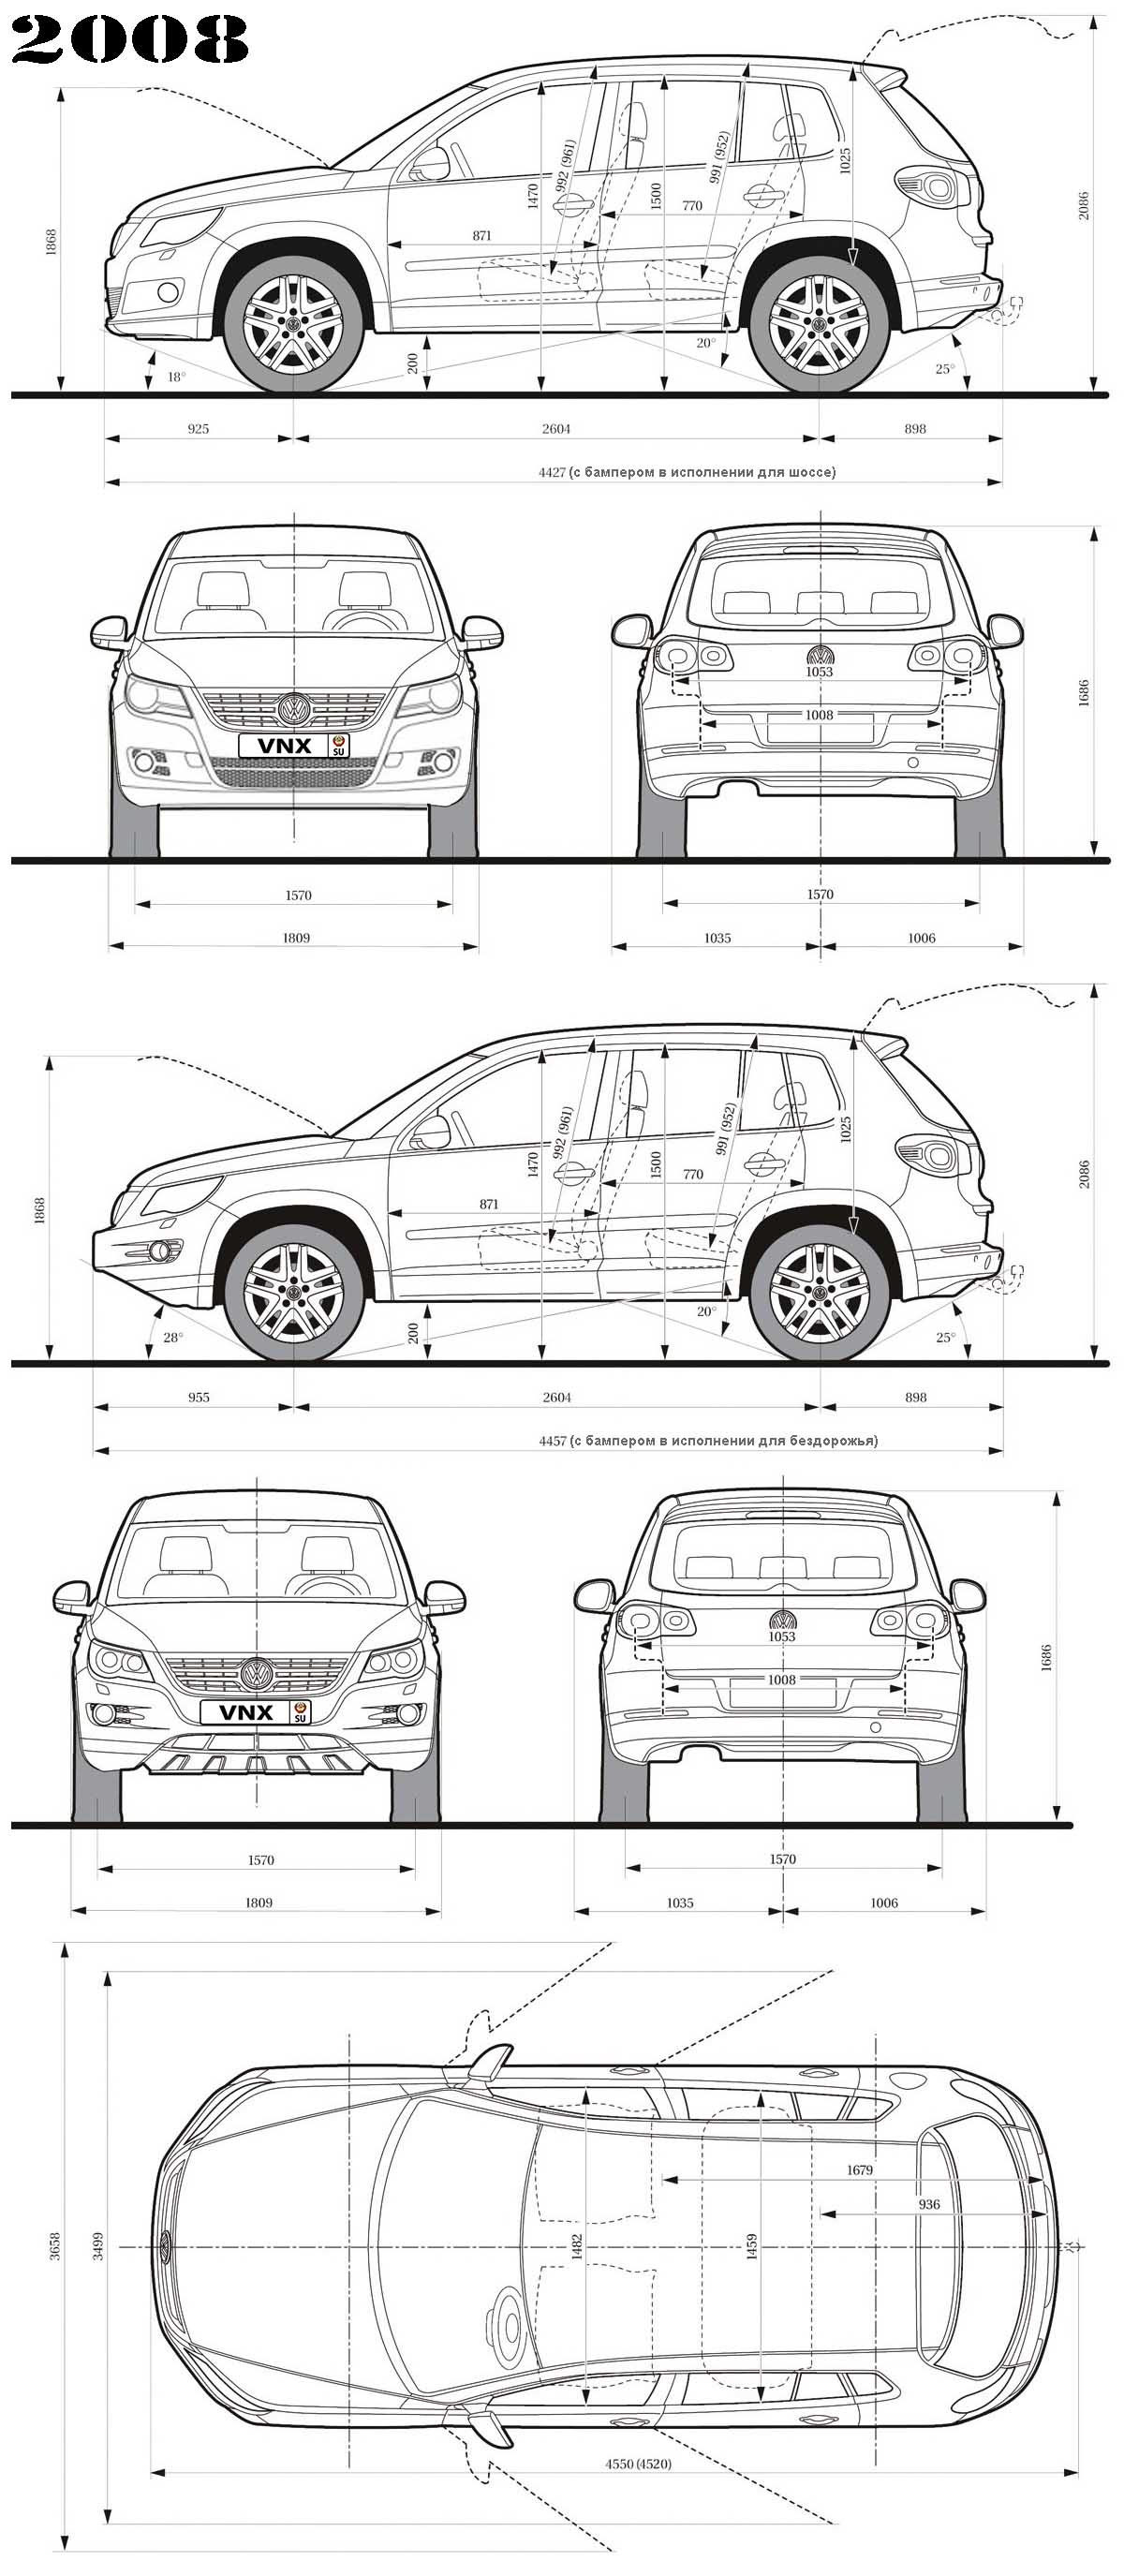 Габаритные размеры Фольксваген Тигуан 2008 (dimensions VW Tiguan)